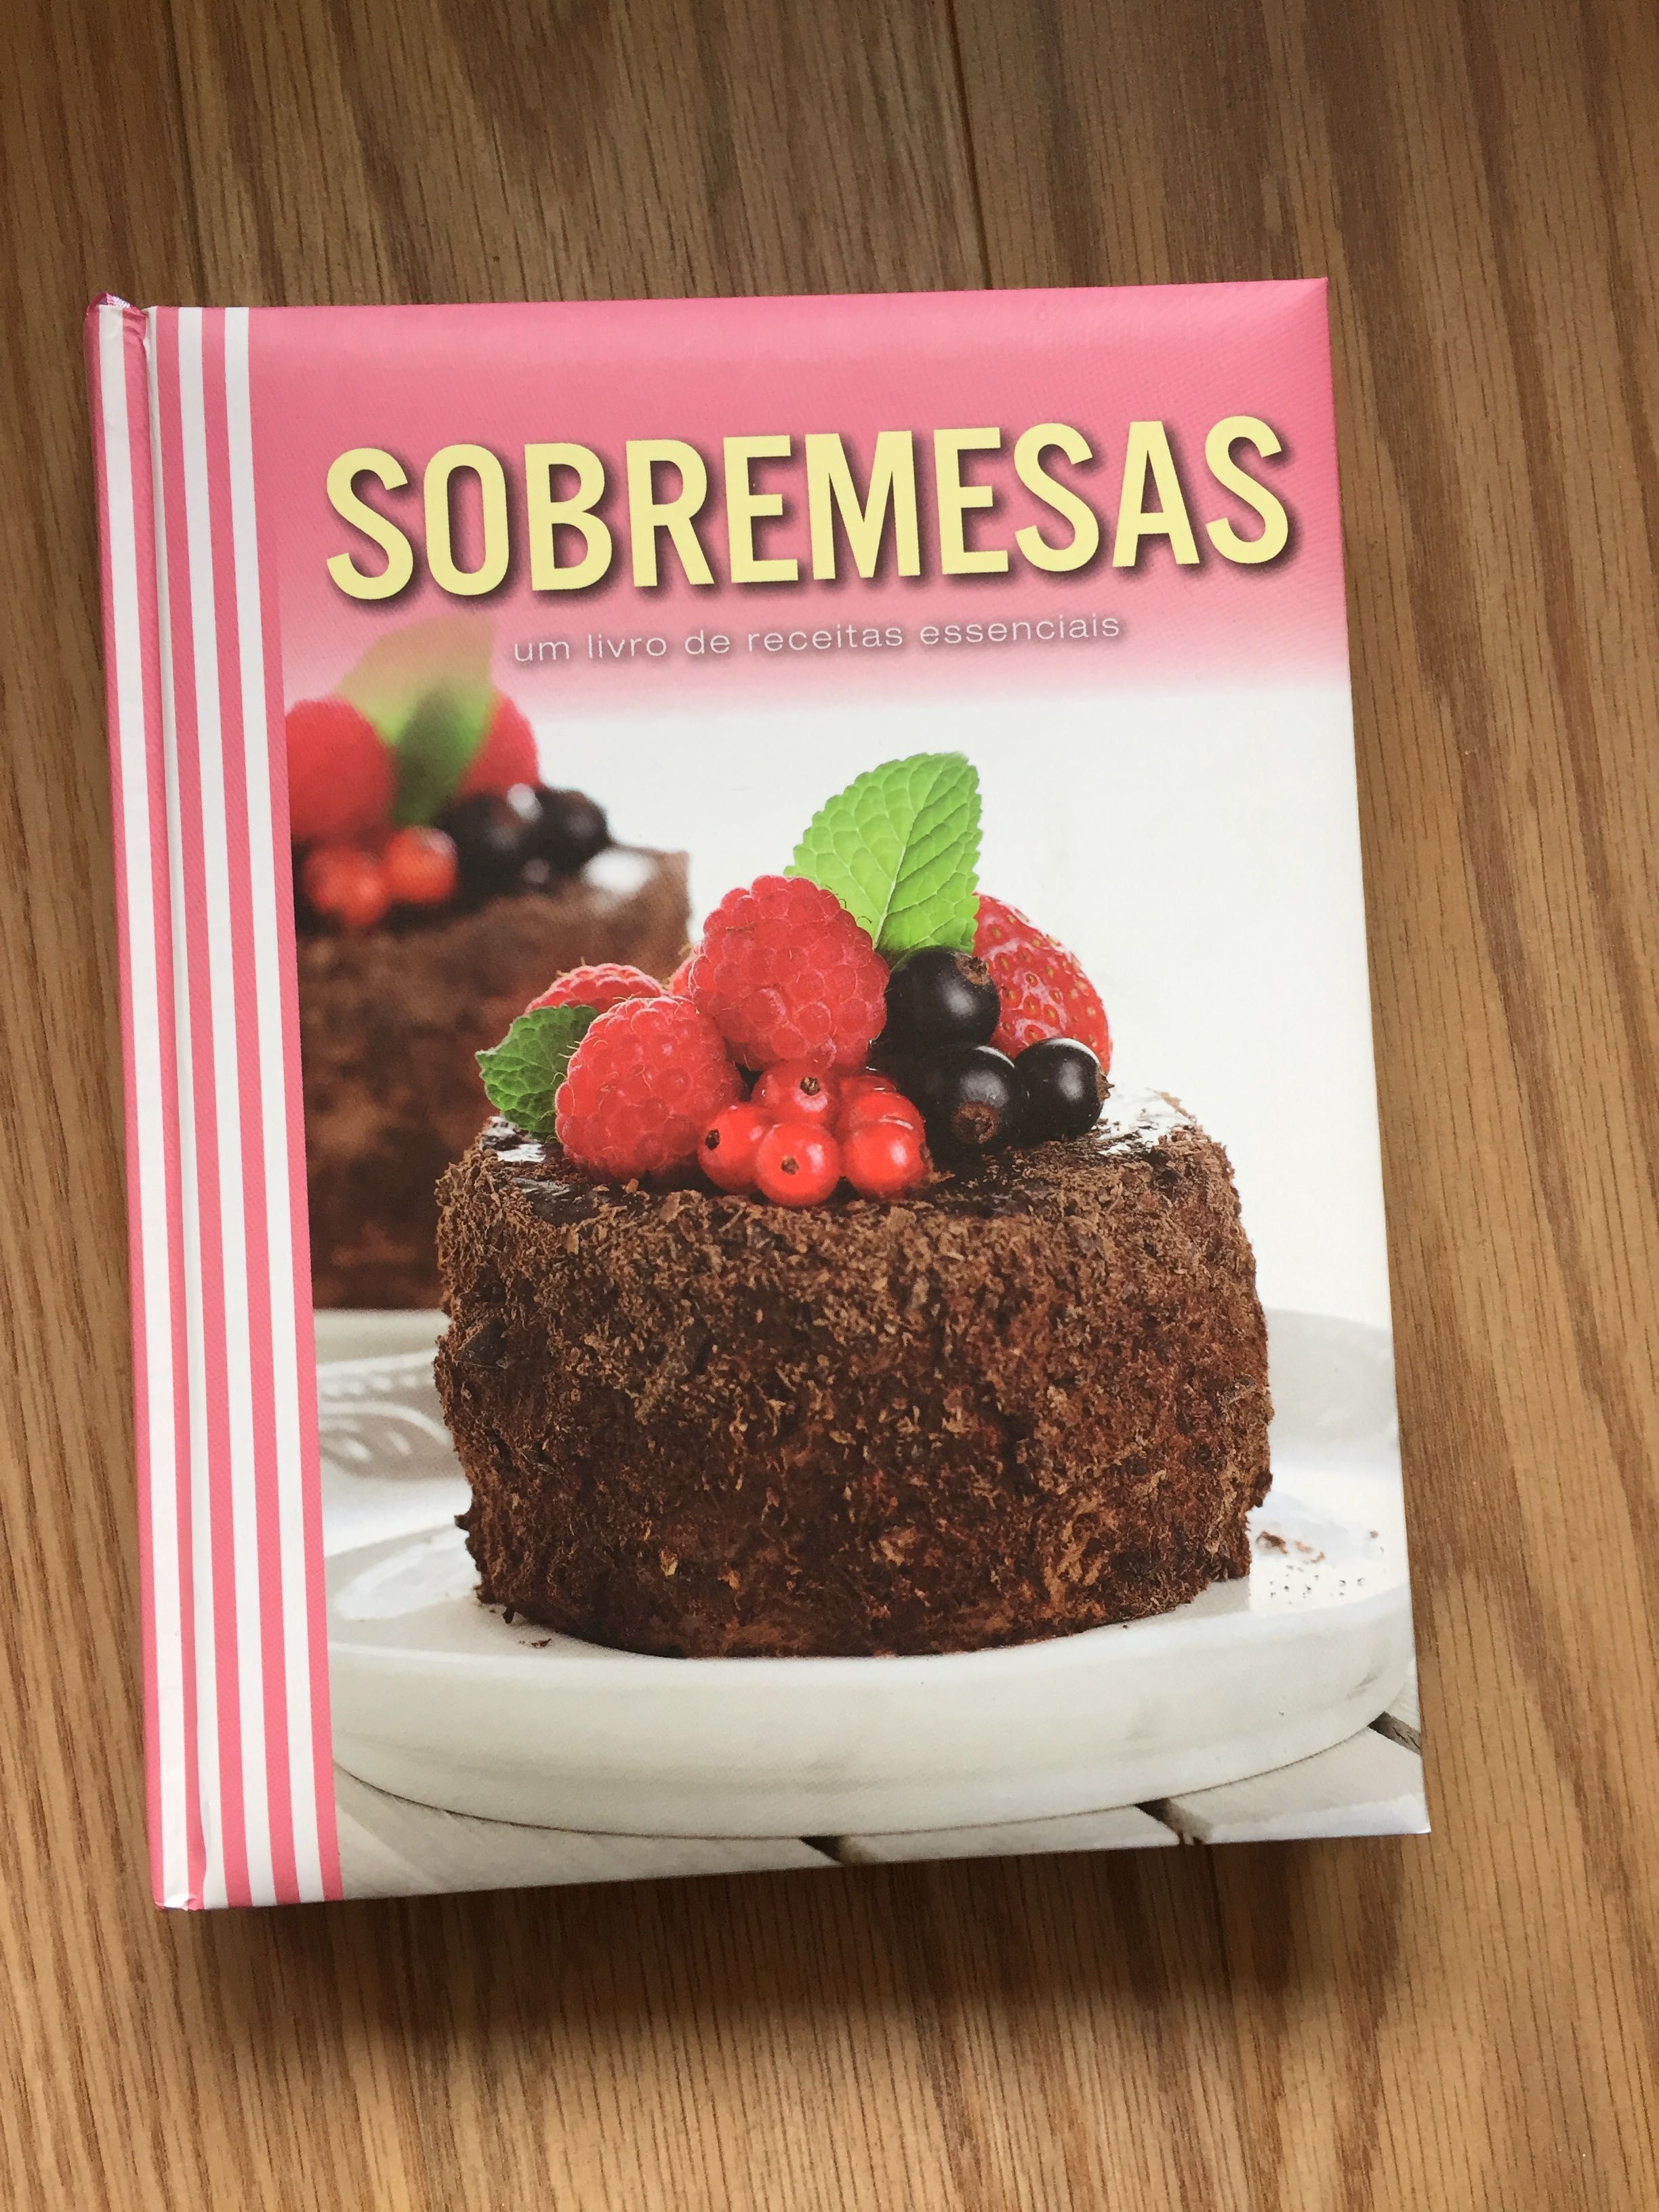 Livros Culinária / Cozinha - Pingo Doce, Sobremesas, Pizzas, Açores